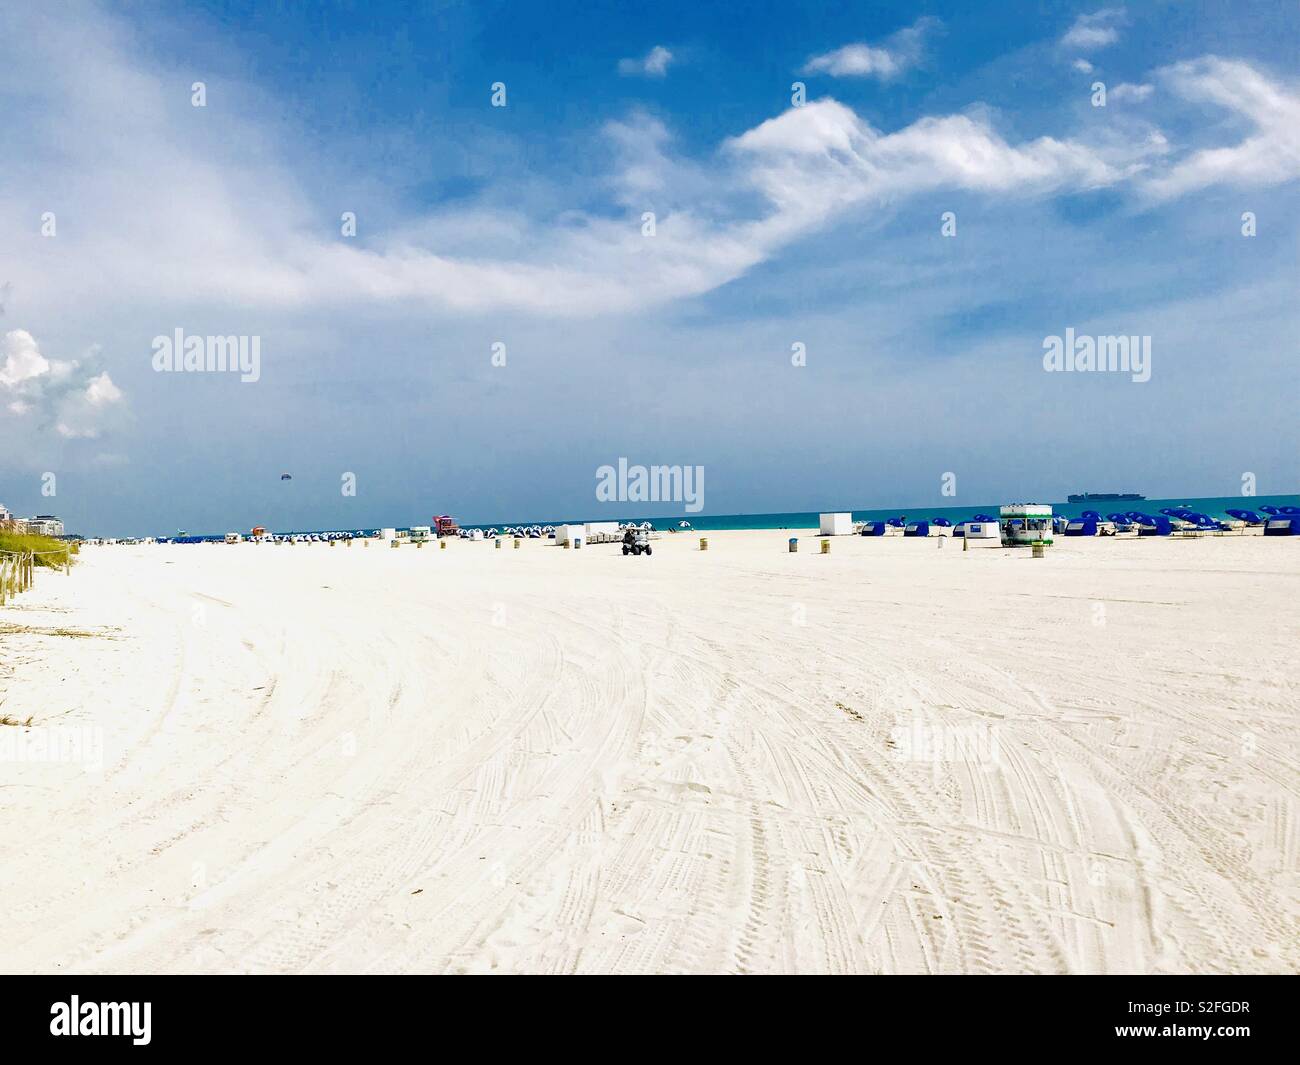 South Beach, Miami, Florida Stock Photo